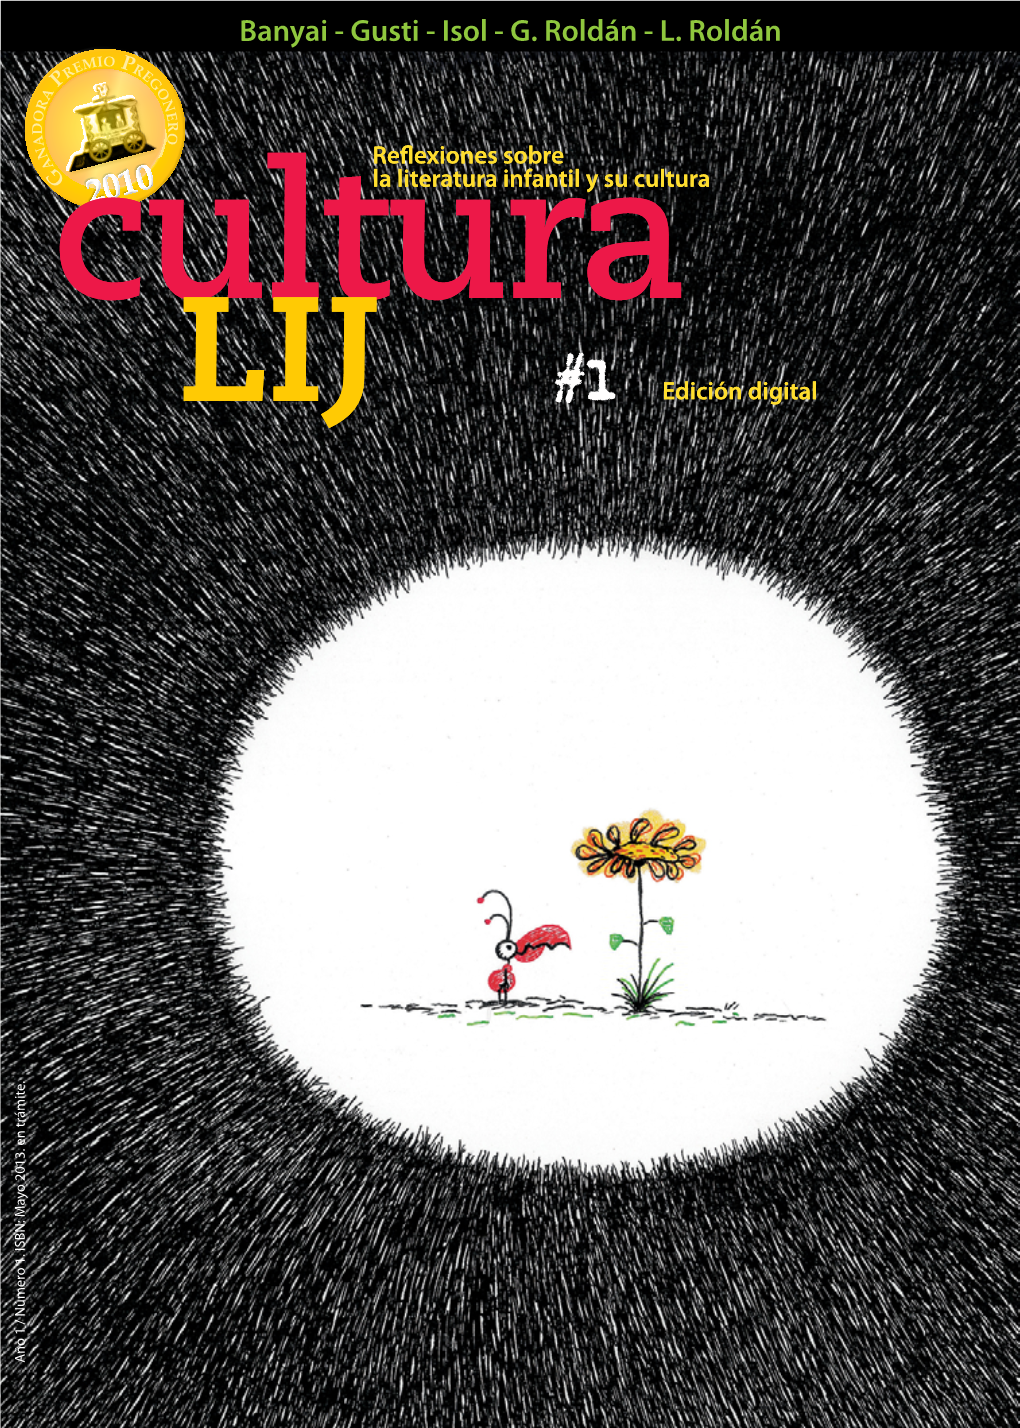 Banyai -L.Roldán -Isolg.Roldán -Gusti La Literatura Infantil Ysucultura Reflexiones Sobre #1 Edición Digital SUMARIO / 1